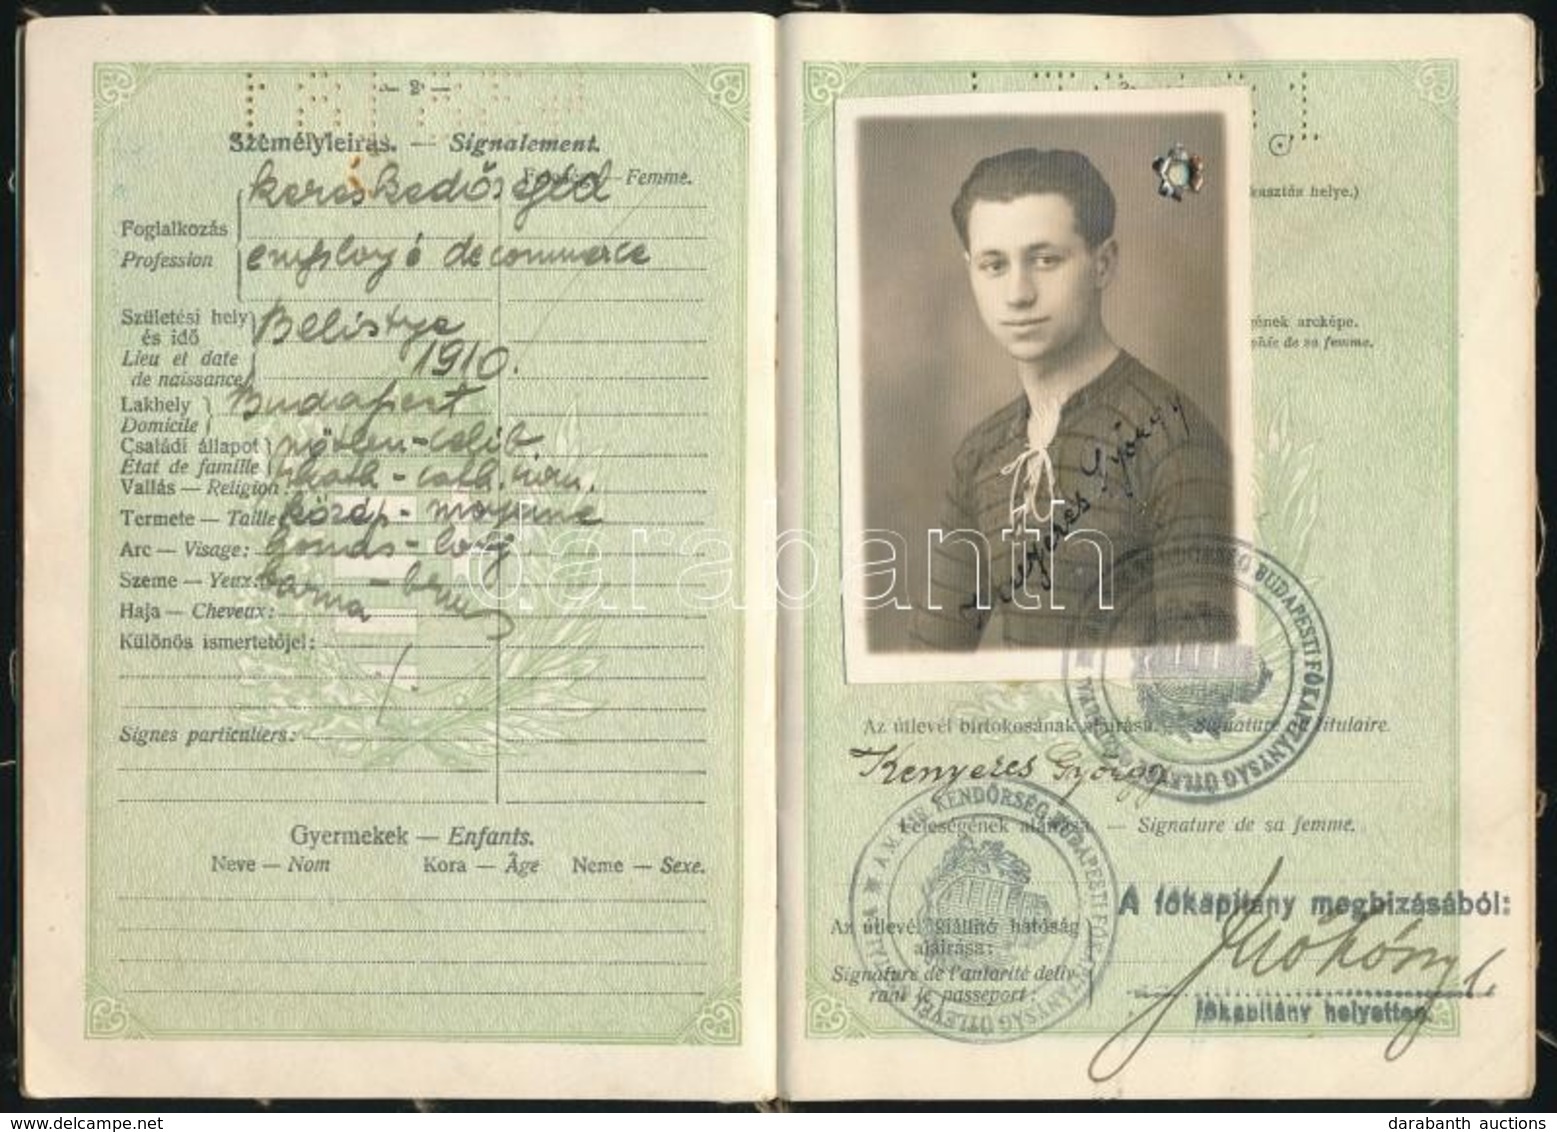 1934-1936 Magyar Királyság Fényképes útlevele Kereskedősegéd Részére, Csehszlovák Bejegyzésekkel. - Unclassified